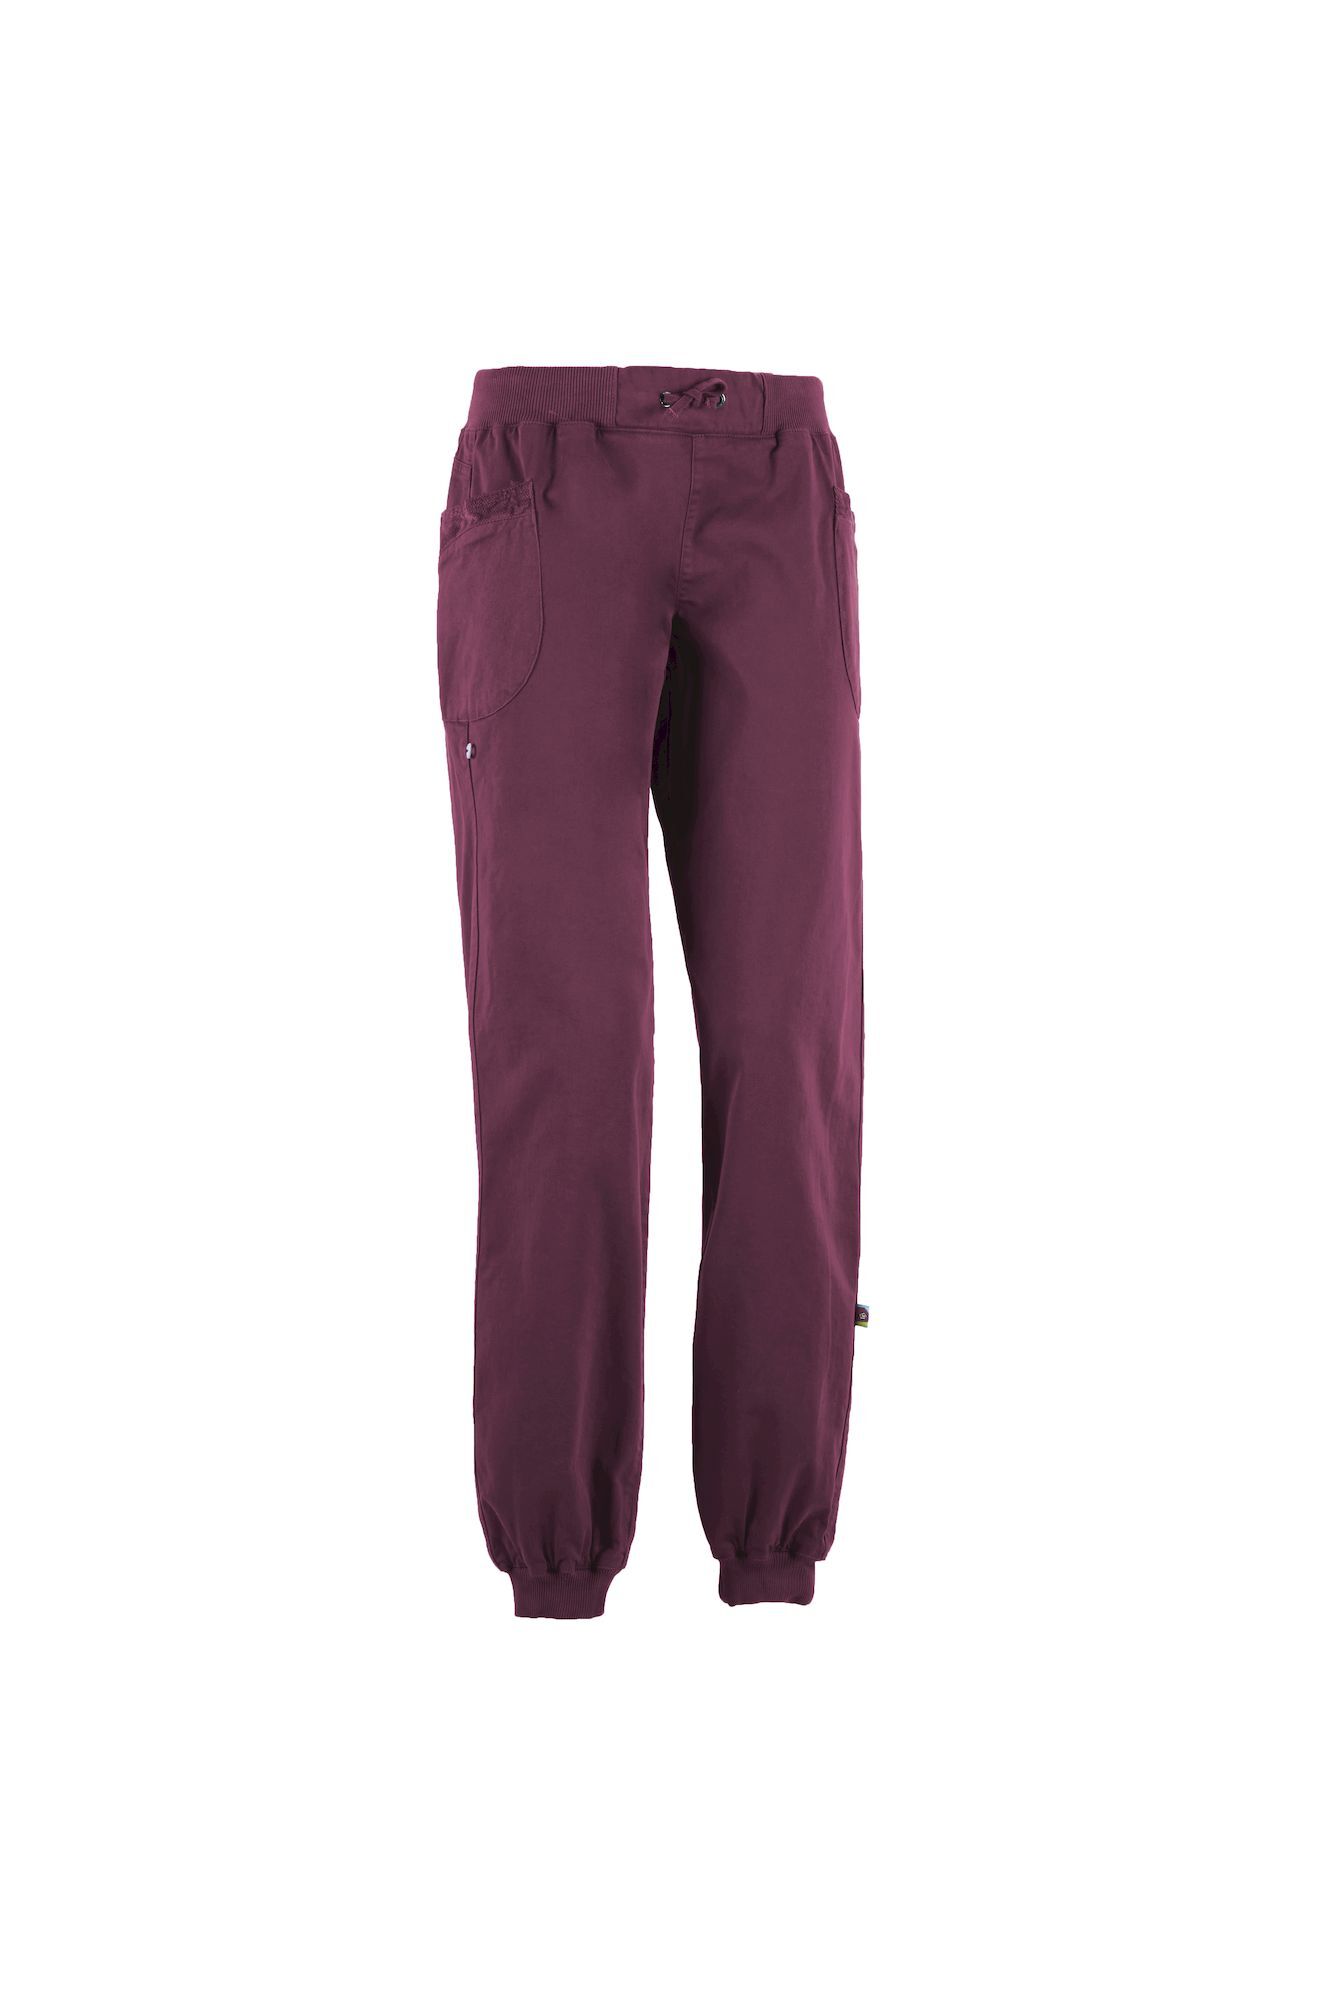 E9 Joy 2.3 - Climbing trousers - Women's